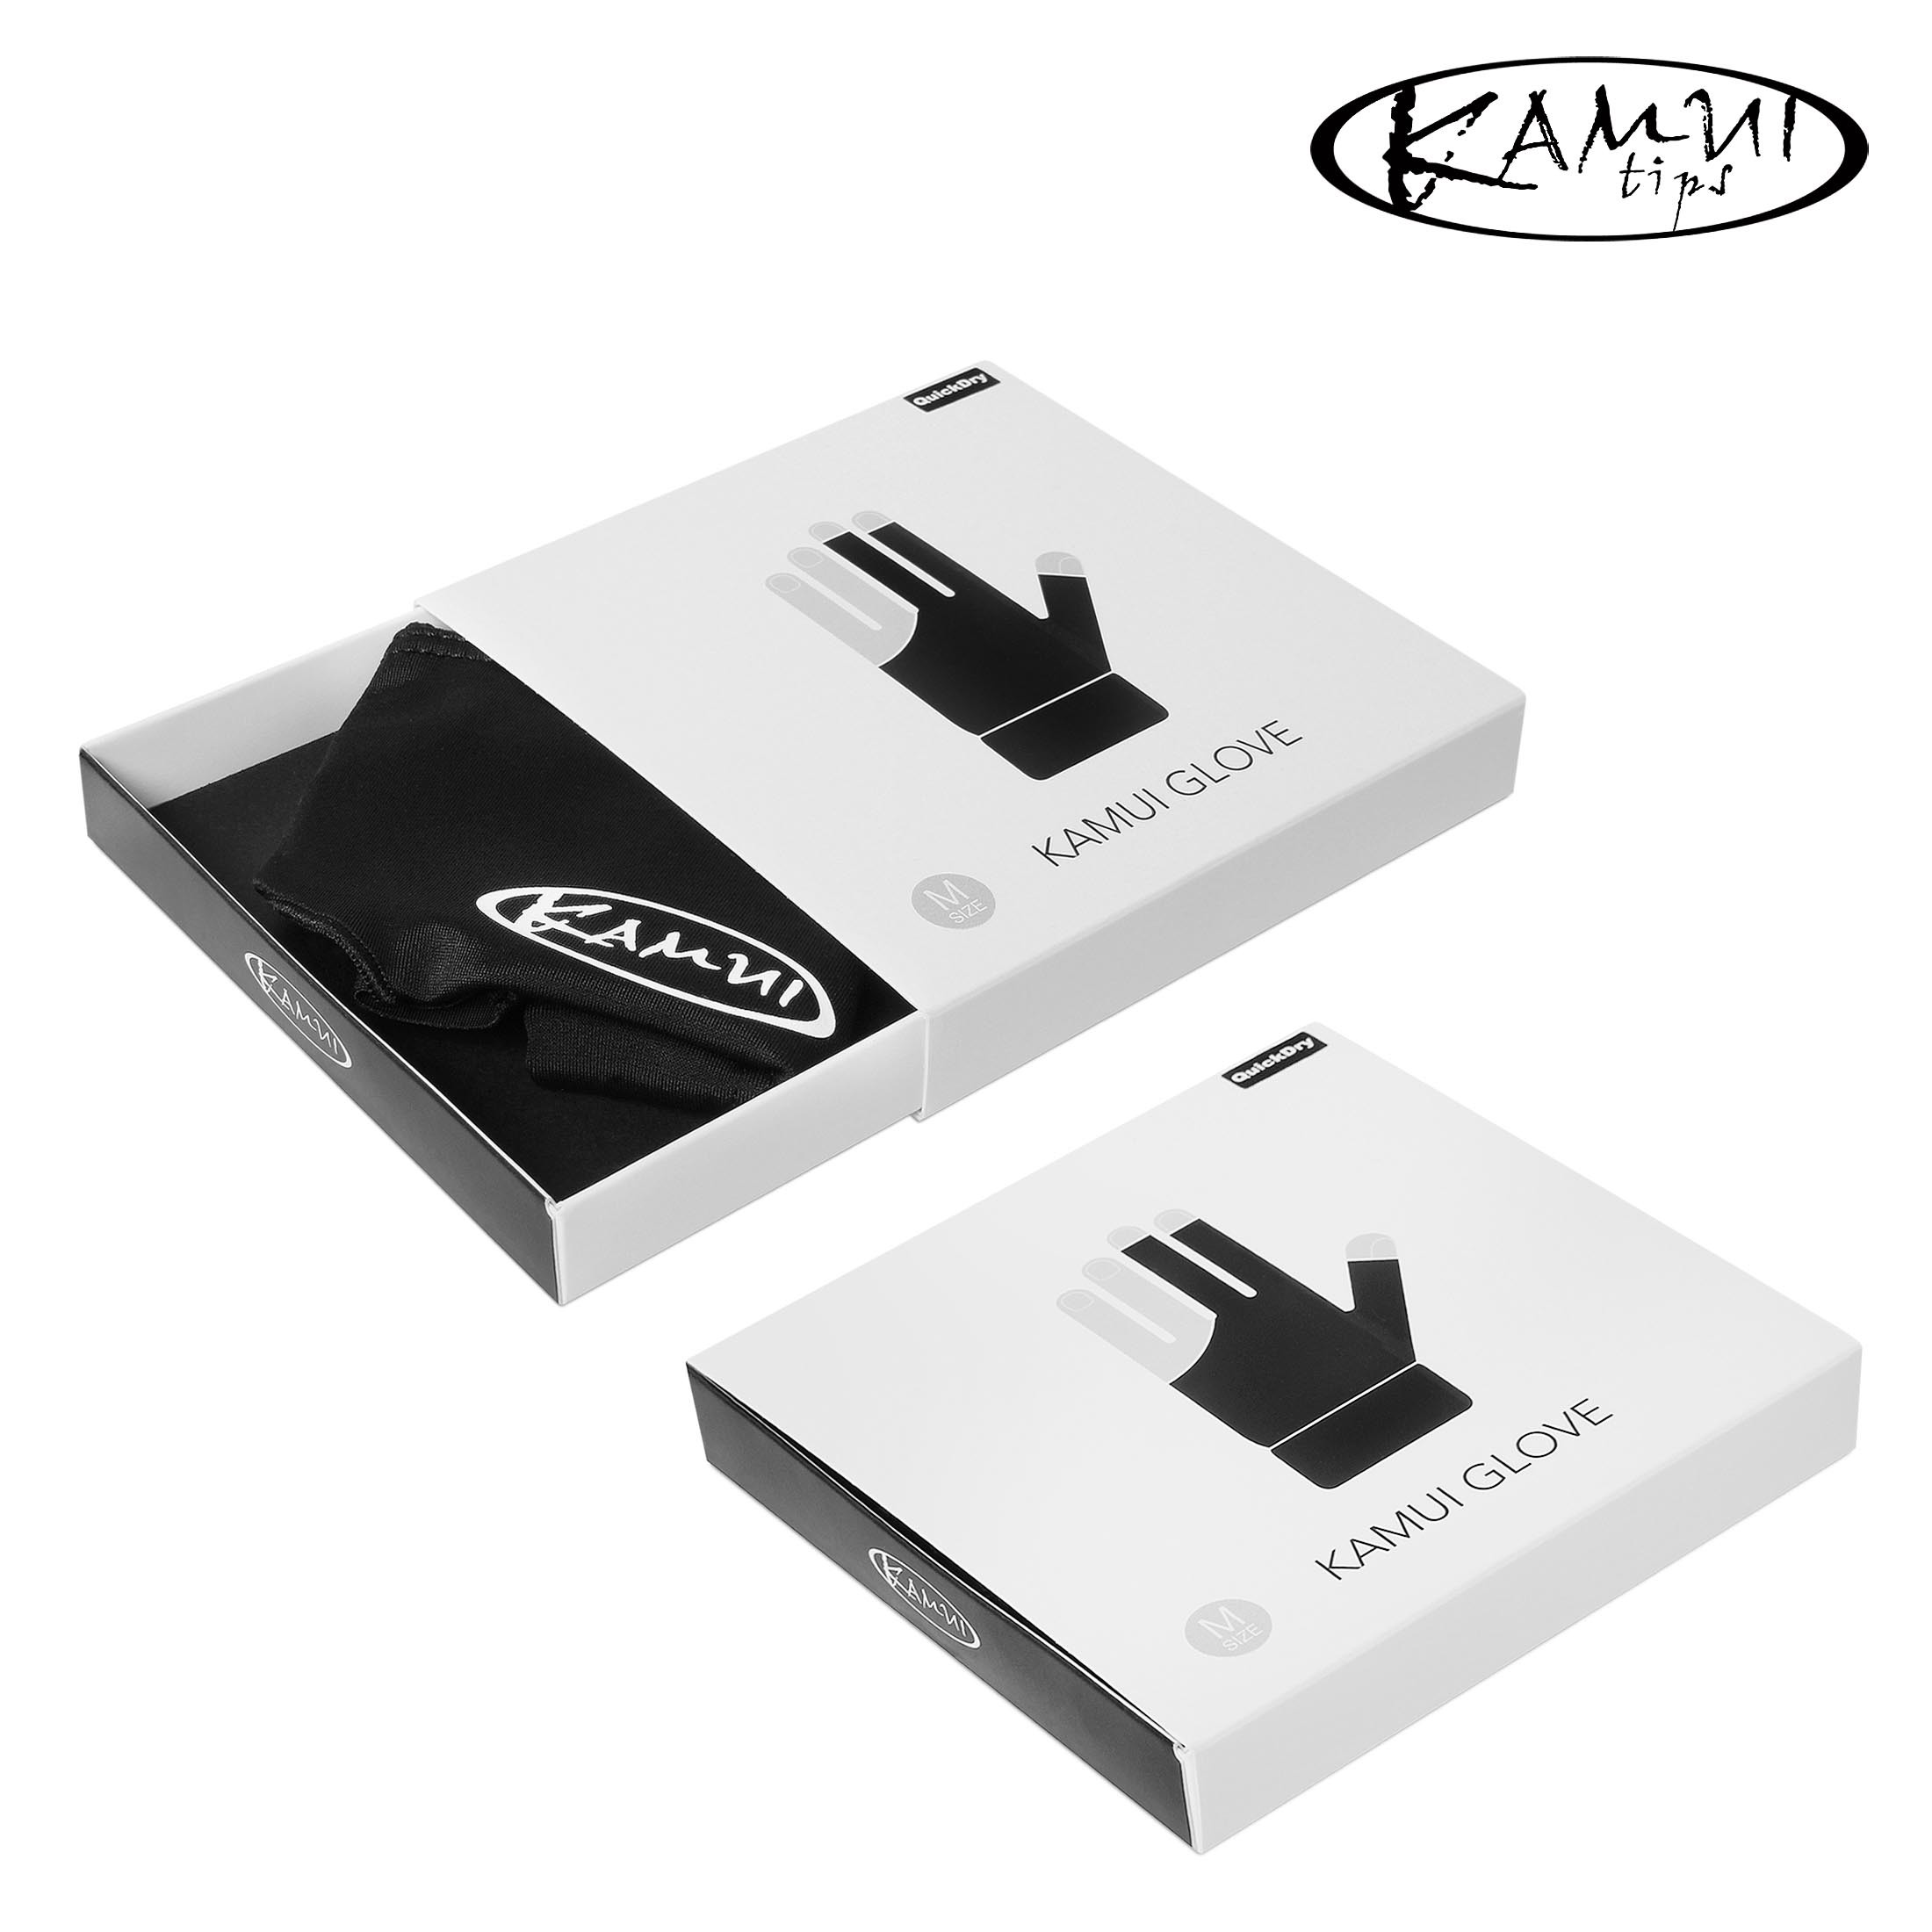 Перчатка Kamui QuickDry черная XL